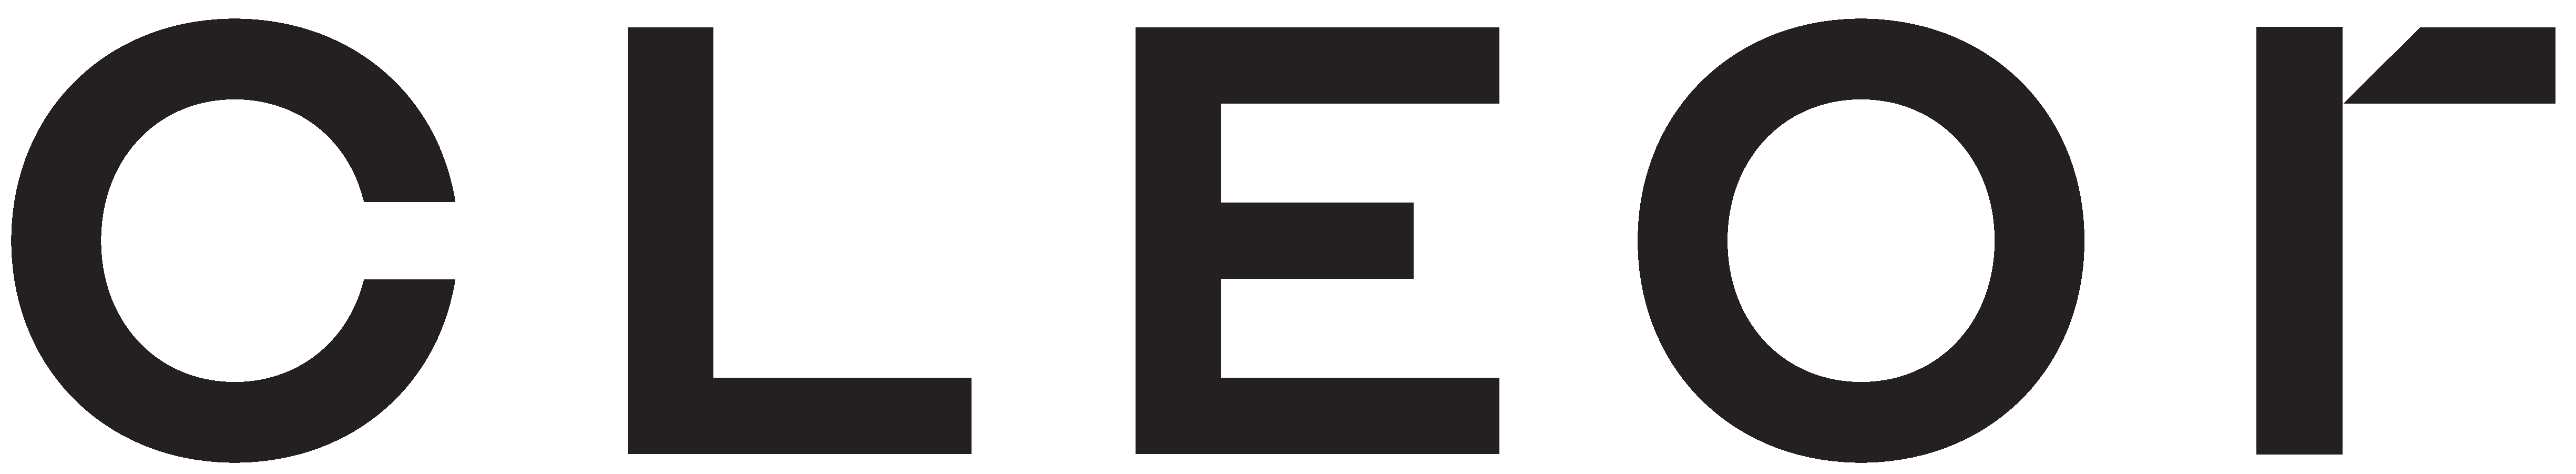 cleor_logo-logo-fullsize